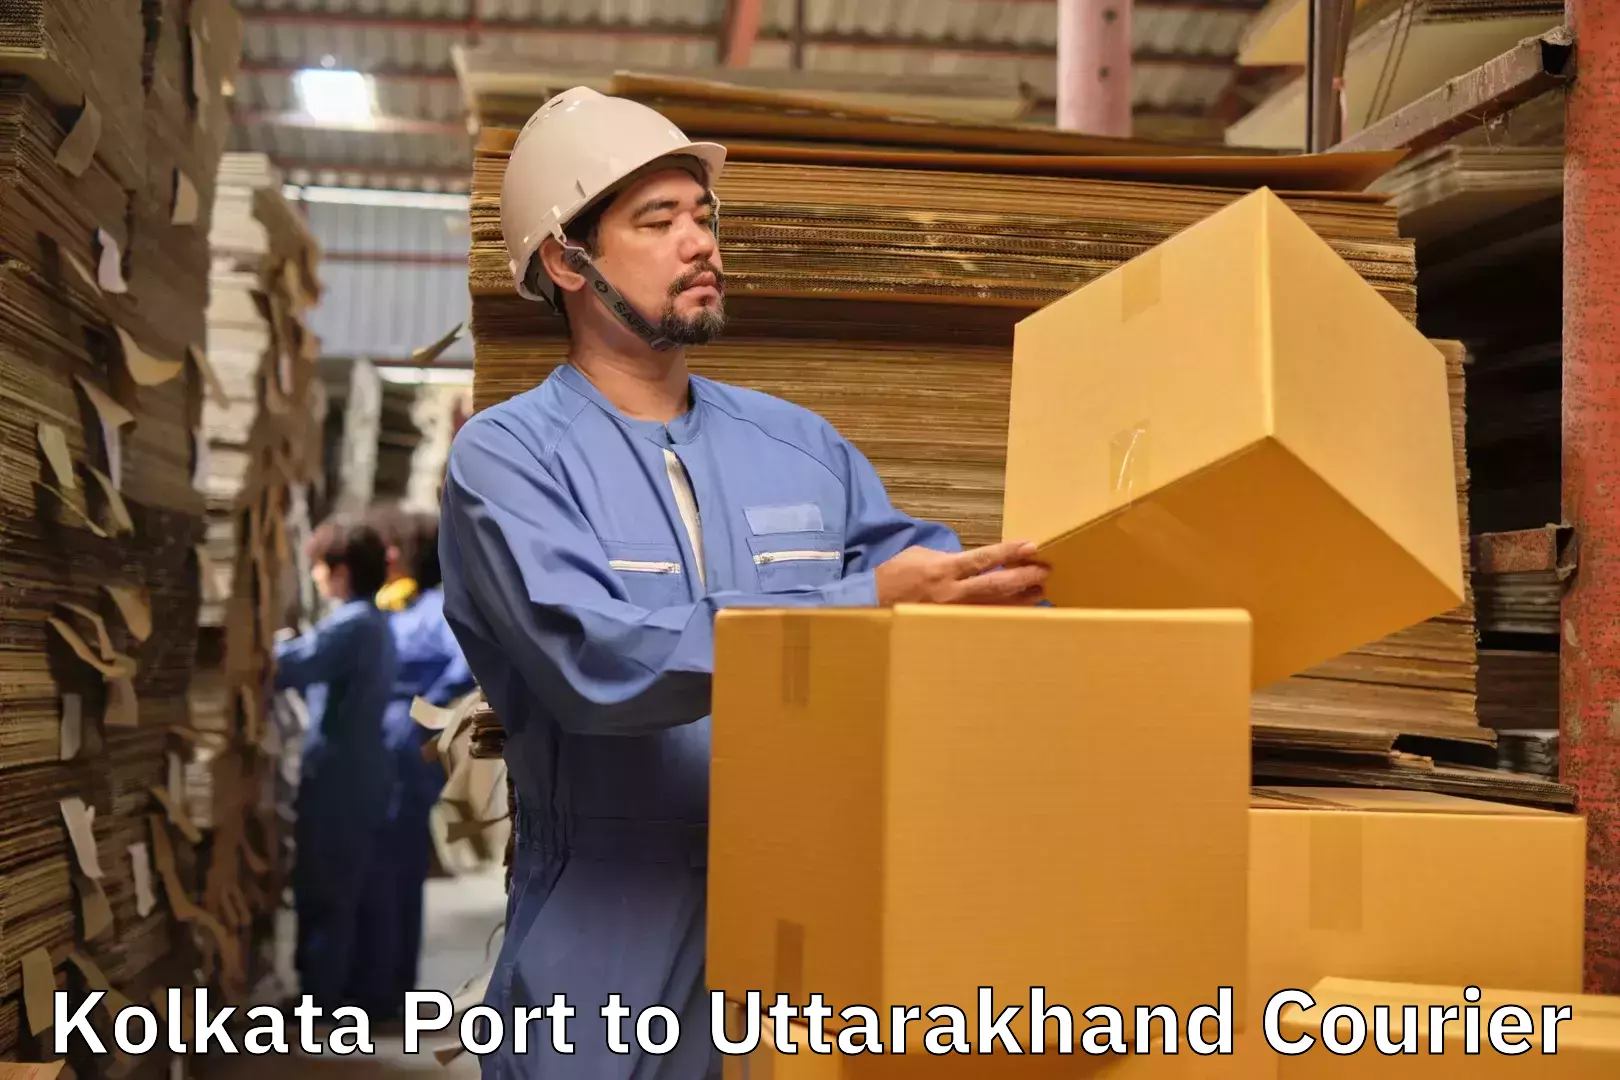 Urgent luggage shipment Kolkata Port to Paithani